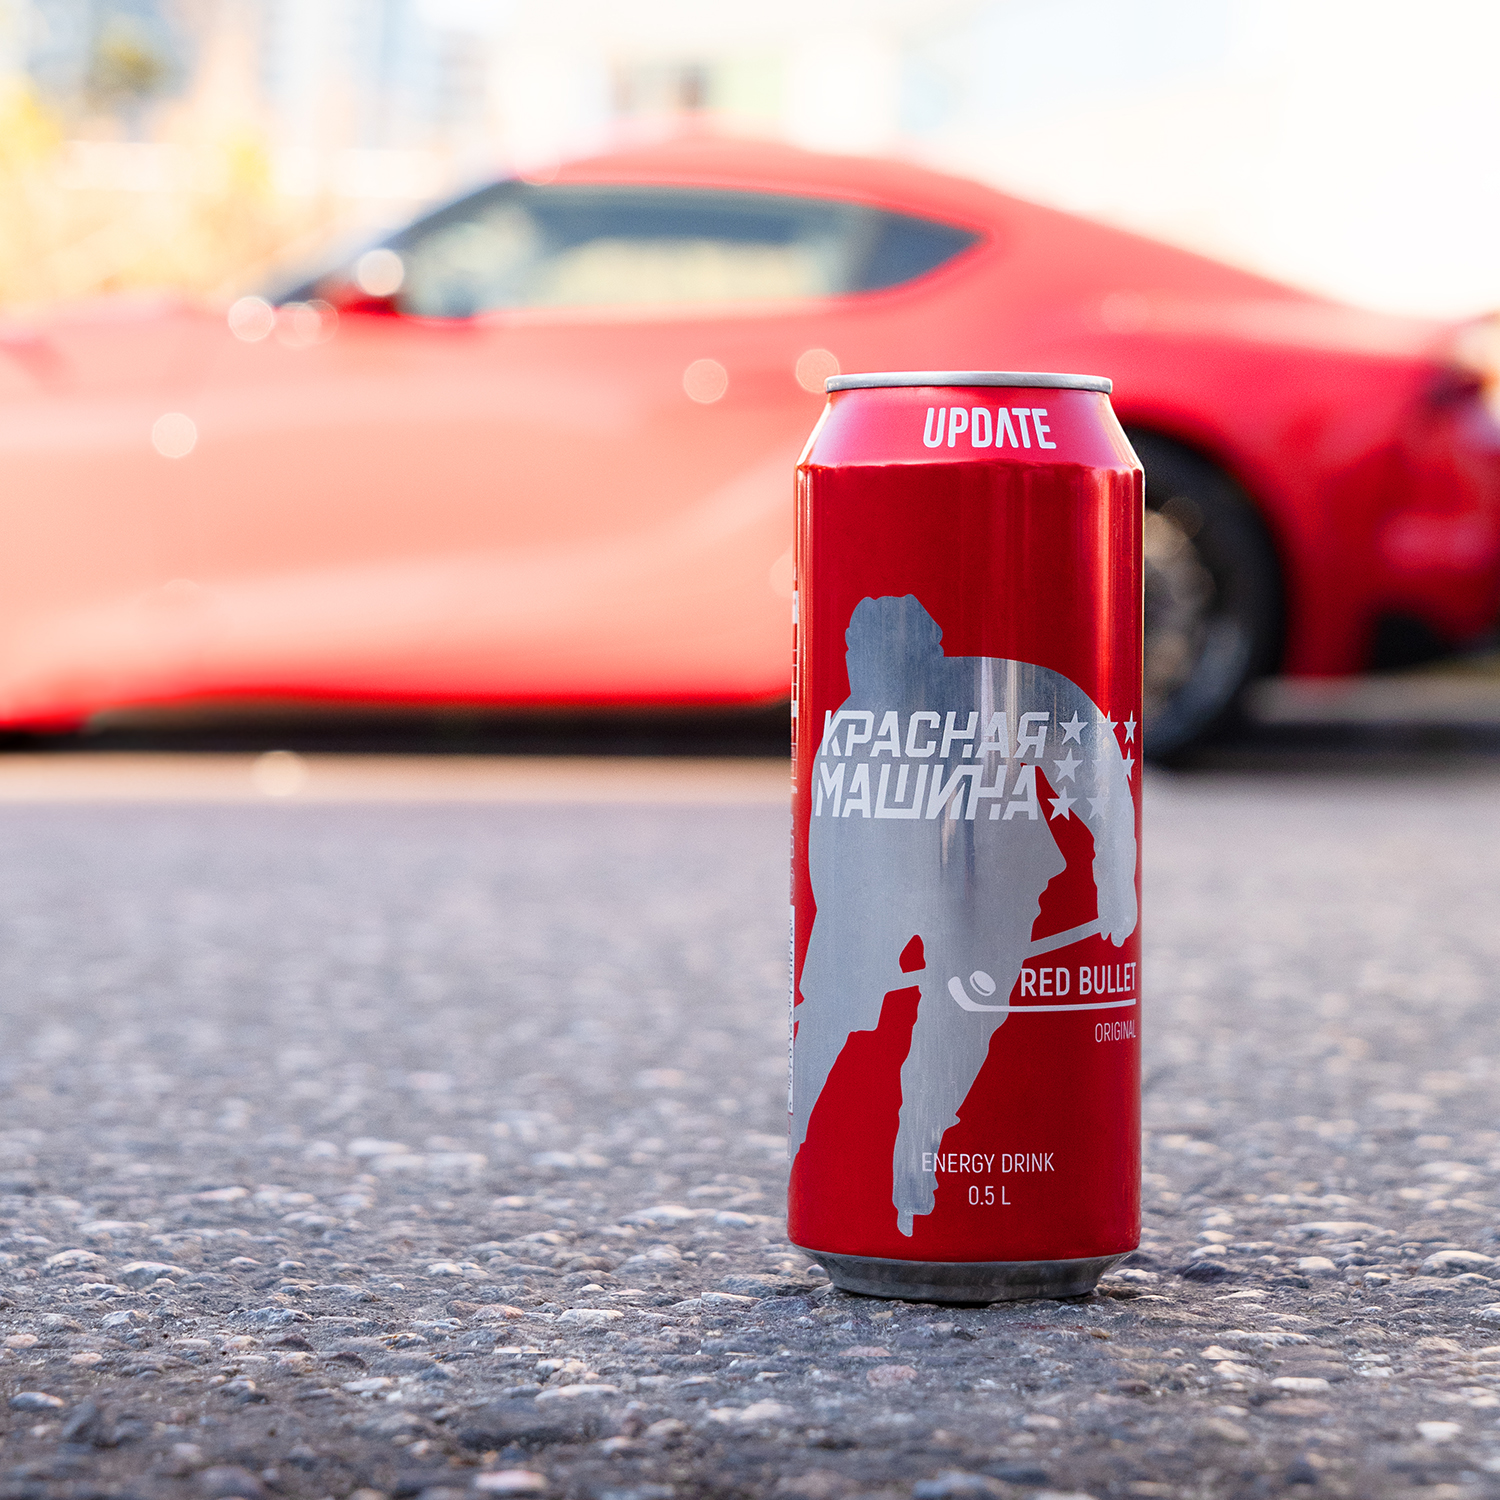 Напиток безалкогольный энергетический Красная Машина  Red Bullet красная банка 0,5л "UPDATE ORIGINAL" 